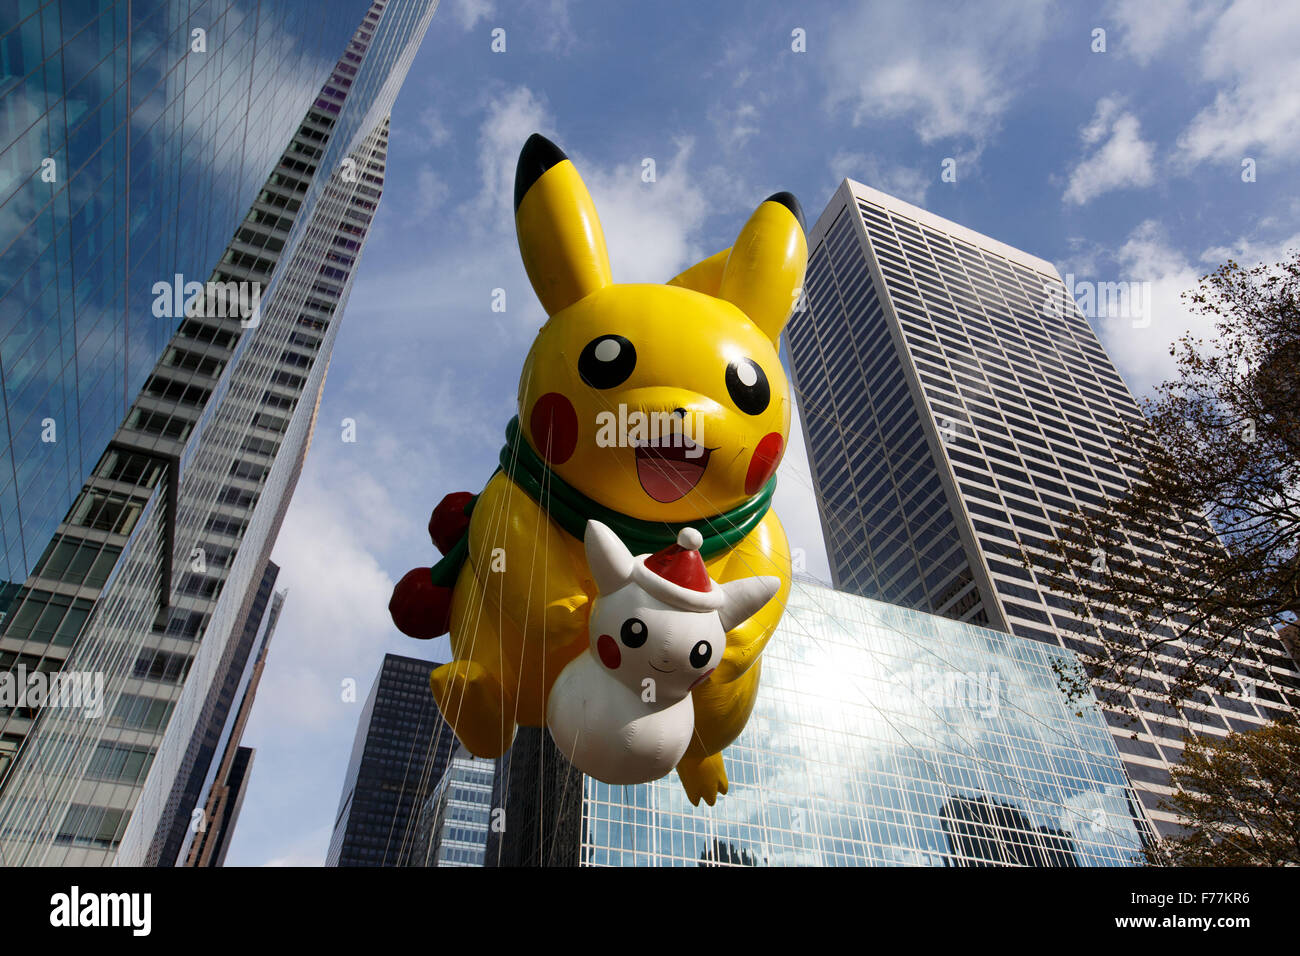 New York, USA. 26 Nov, 2015. Photo prise le 26 novembre 2015, montre le ballon d 'Pikachu' est vu au cours de la 89e Macy's Thanksgiving Day Parade à New York, aux États-Unis. Credit : Muzi Li/Xinhua/Alamy Live News Banque D'Images